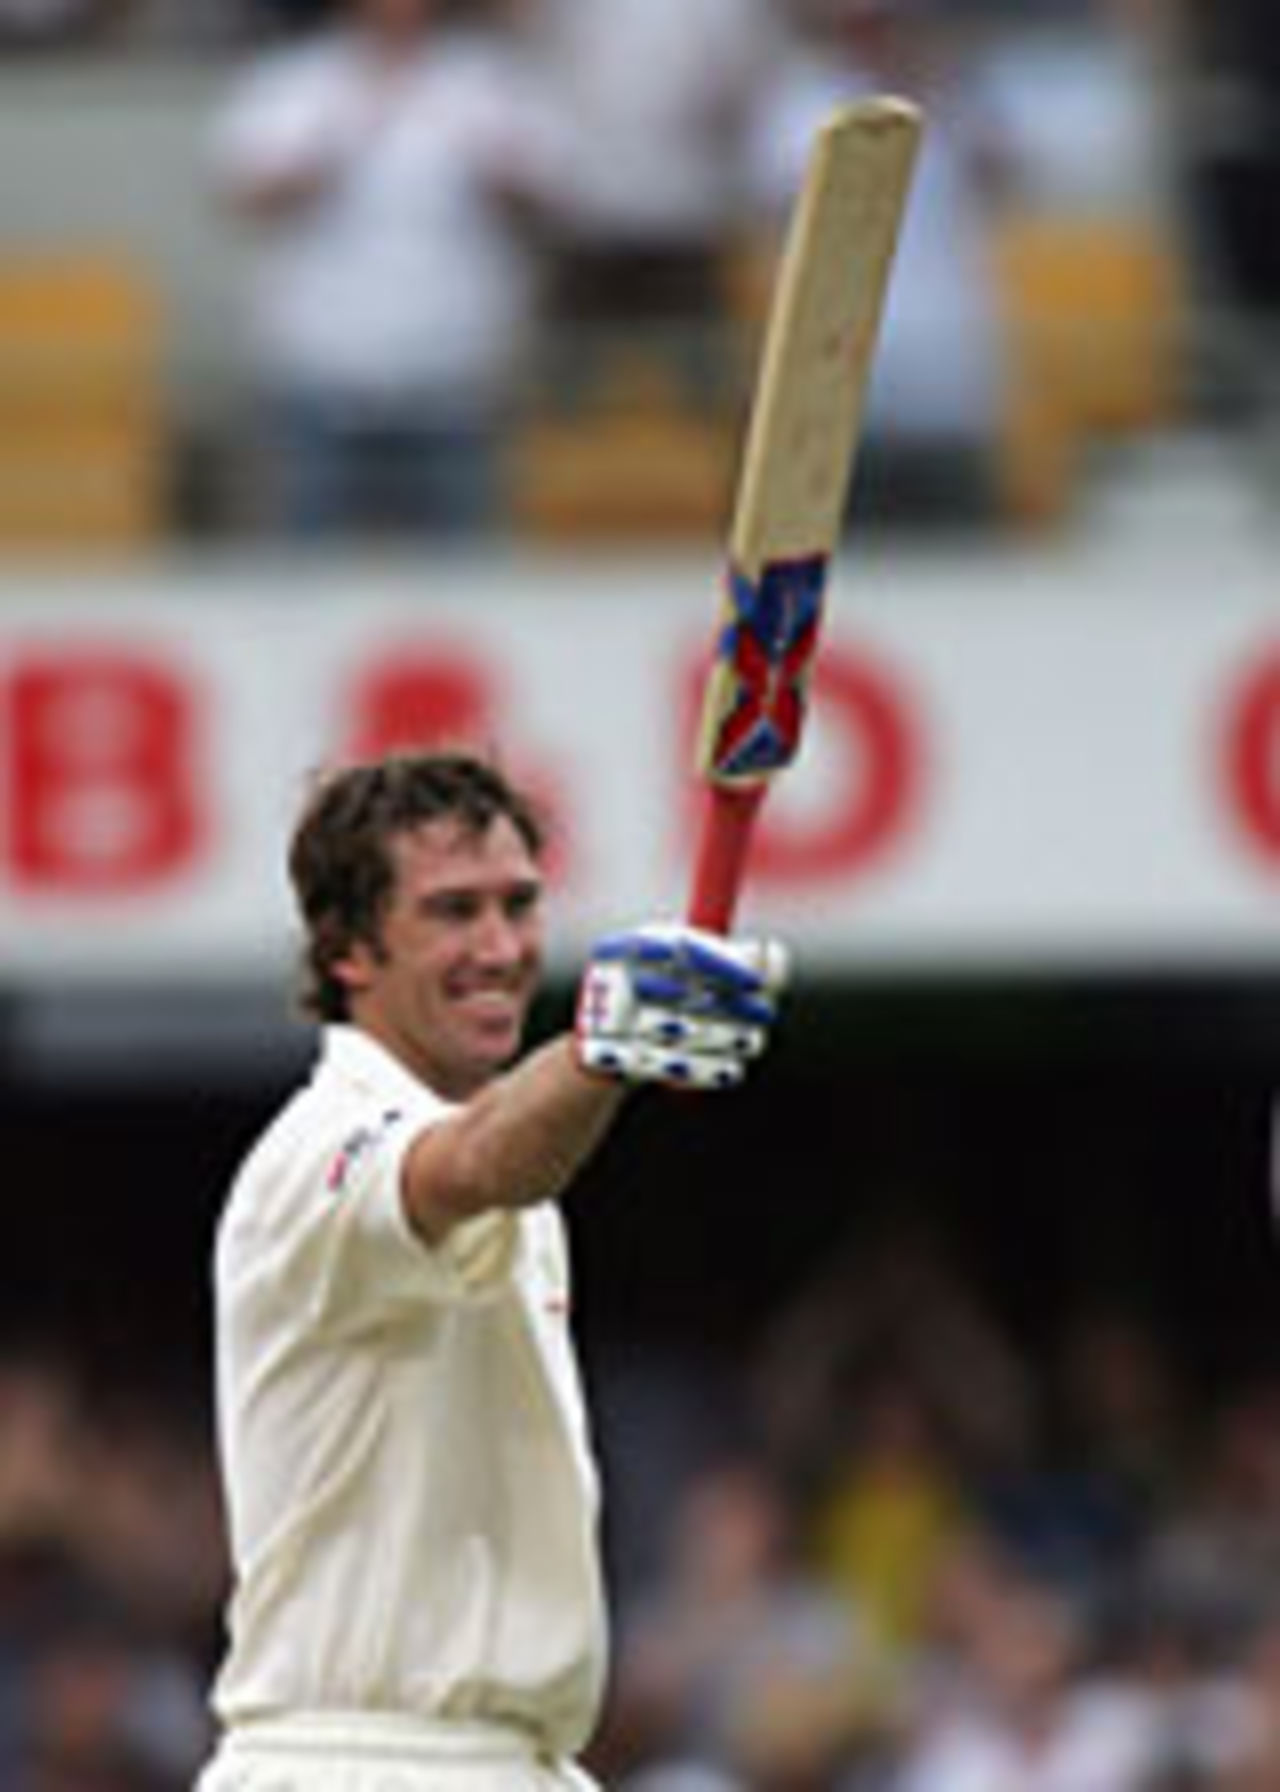 Glenn McGrath celebrates his fifty, Australia v New Zealand, 3rd Day, 1st Test, Brisbane, November 20 2004